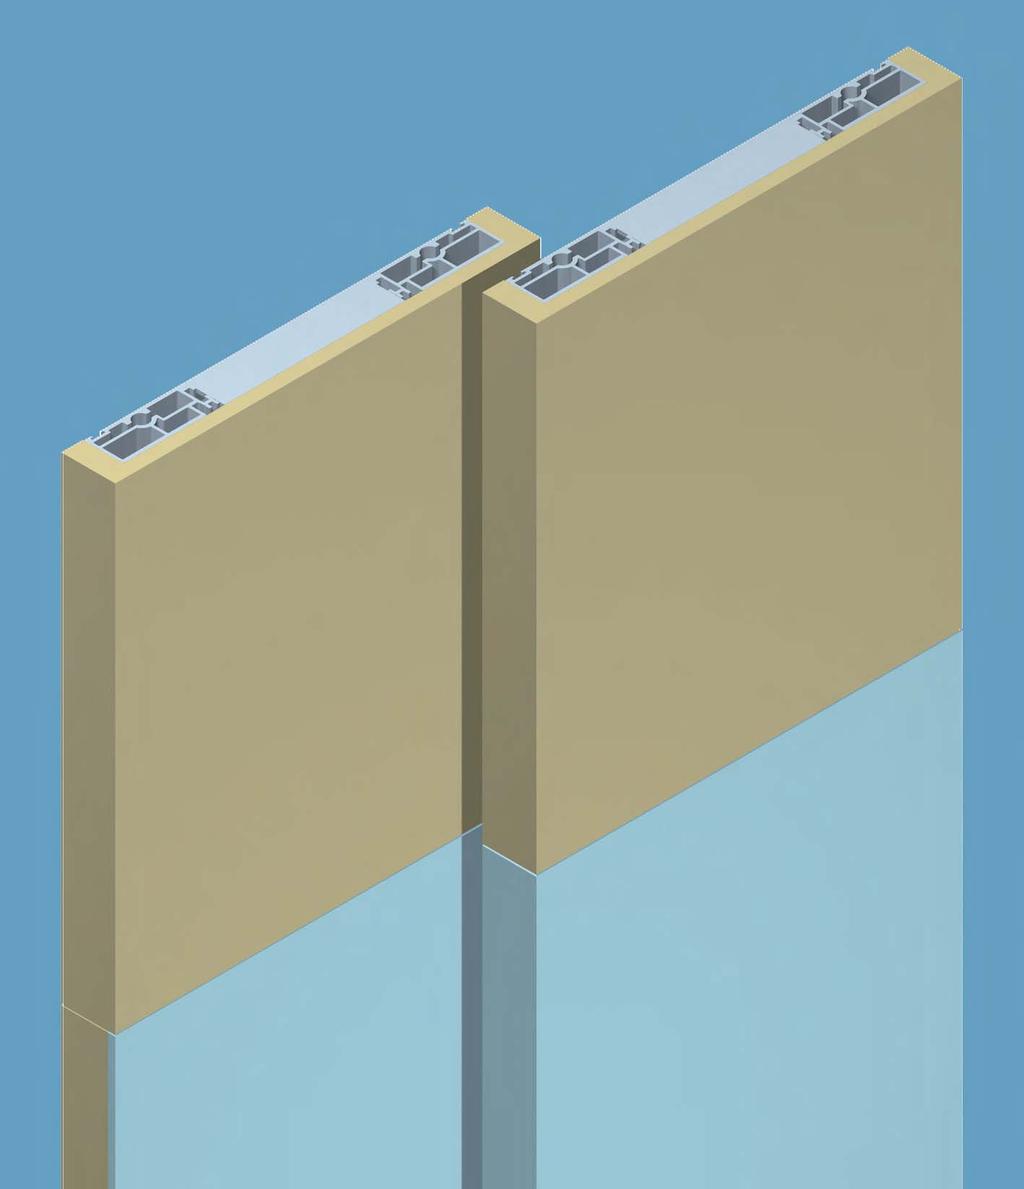 Klippo CRTTERISTICE TECNICE - TECNICL DETILS - CRCTERISTIQUES TECNIQUES - TECNISCE DTEN Struttura in alluminio per ante armadi (sp. 22 mm), per applicazione di pannelli in legno (sp.